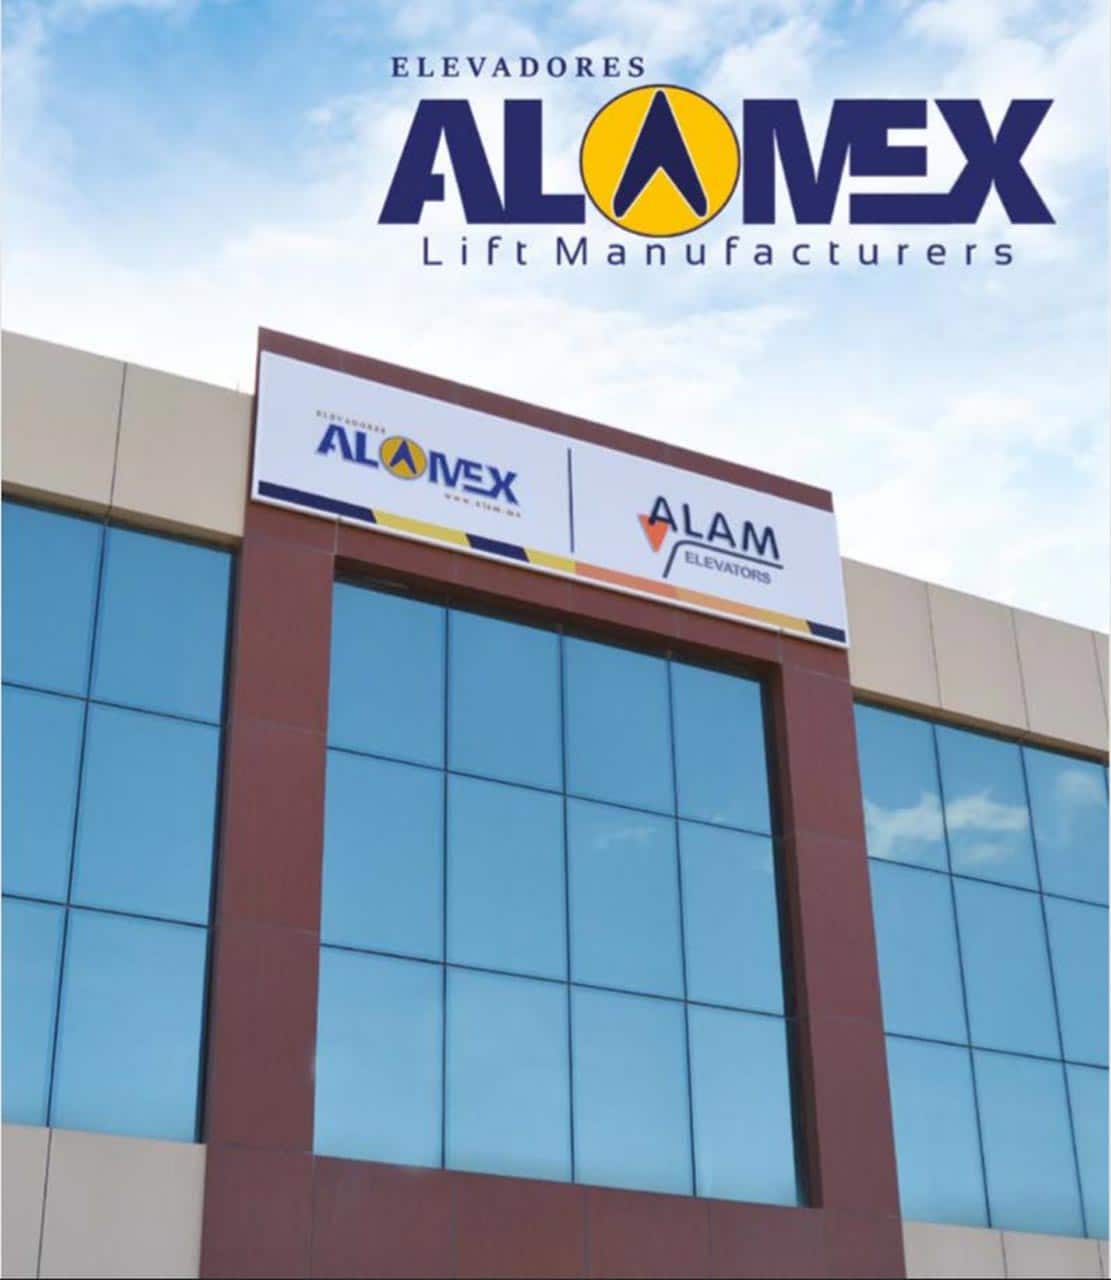 Alamex Elevator